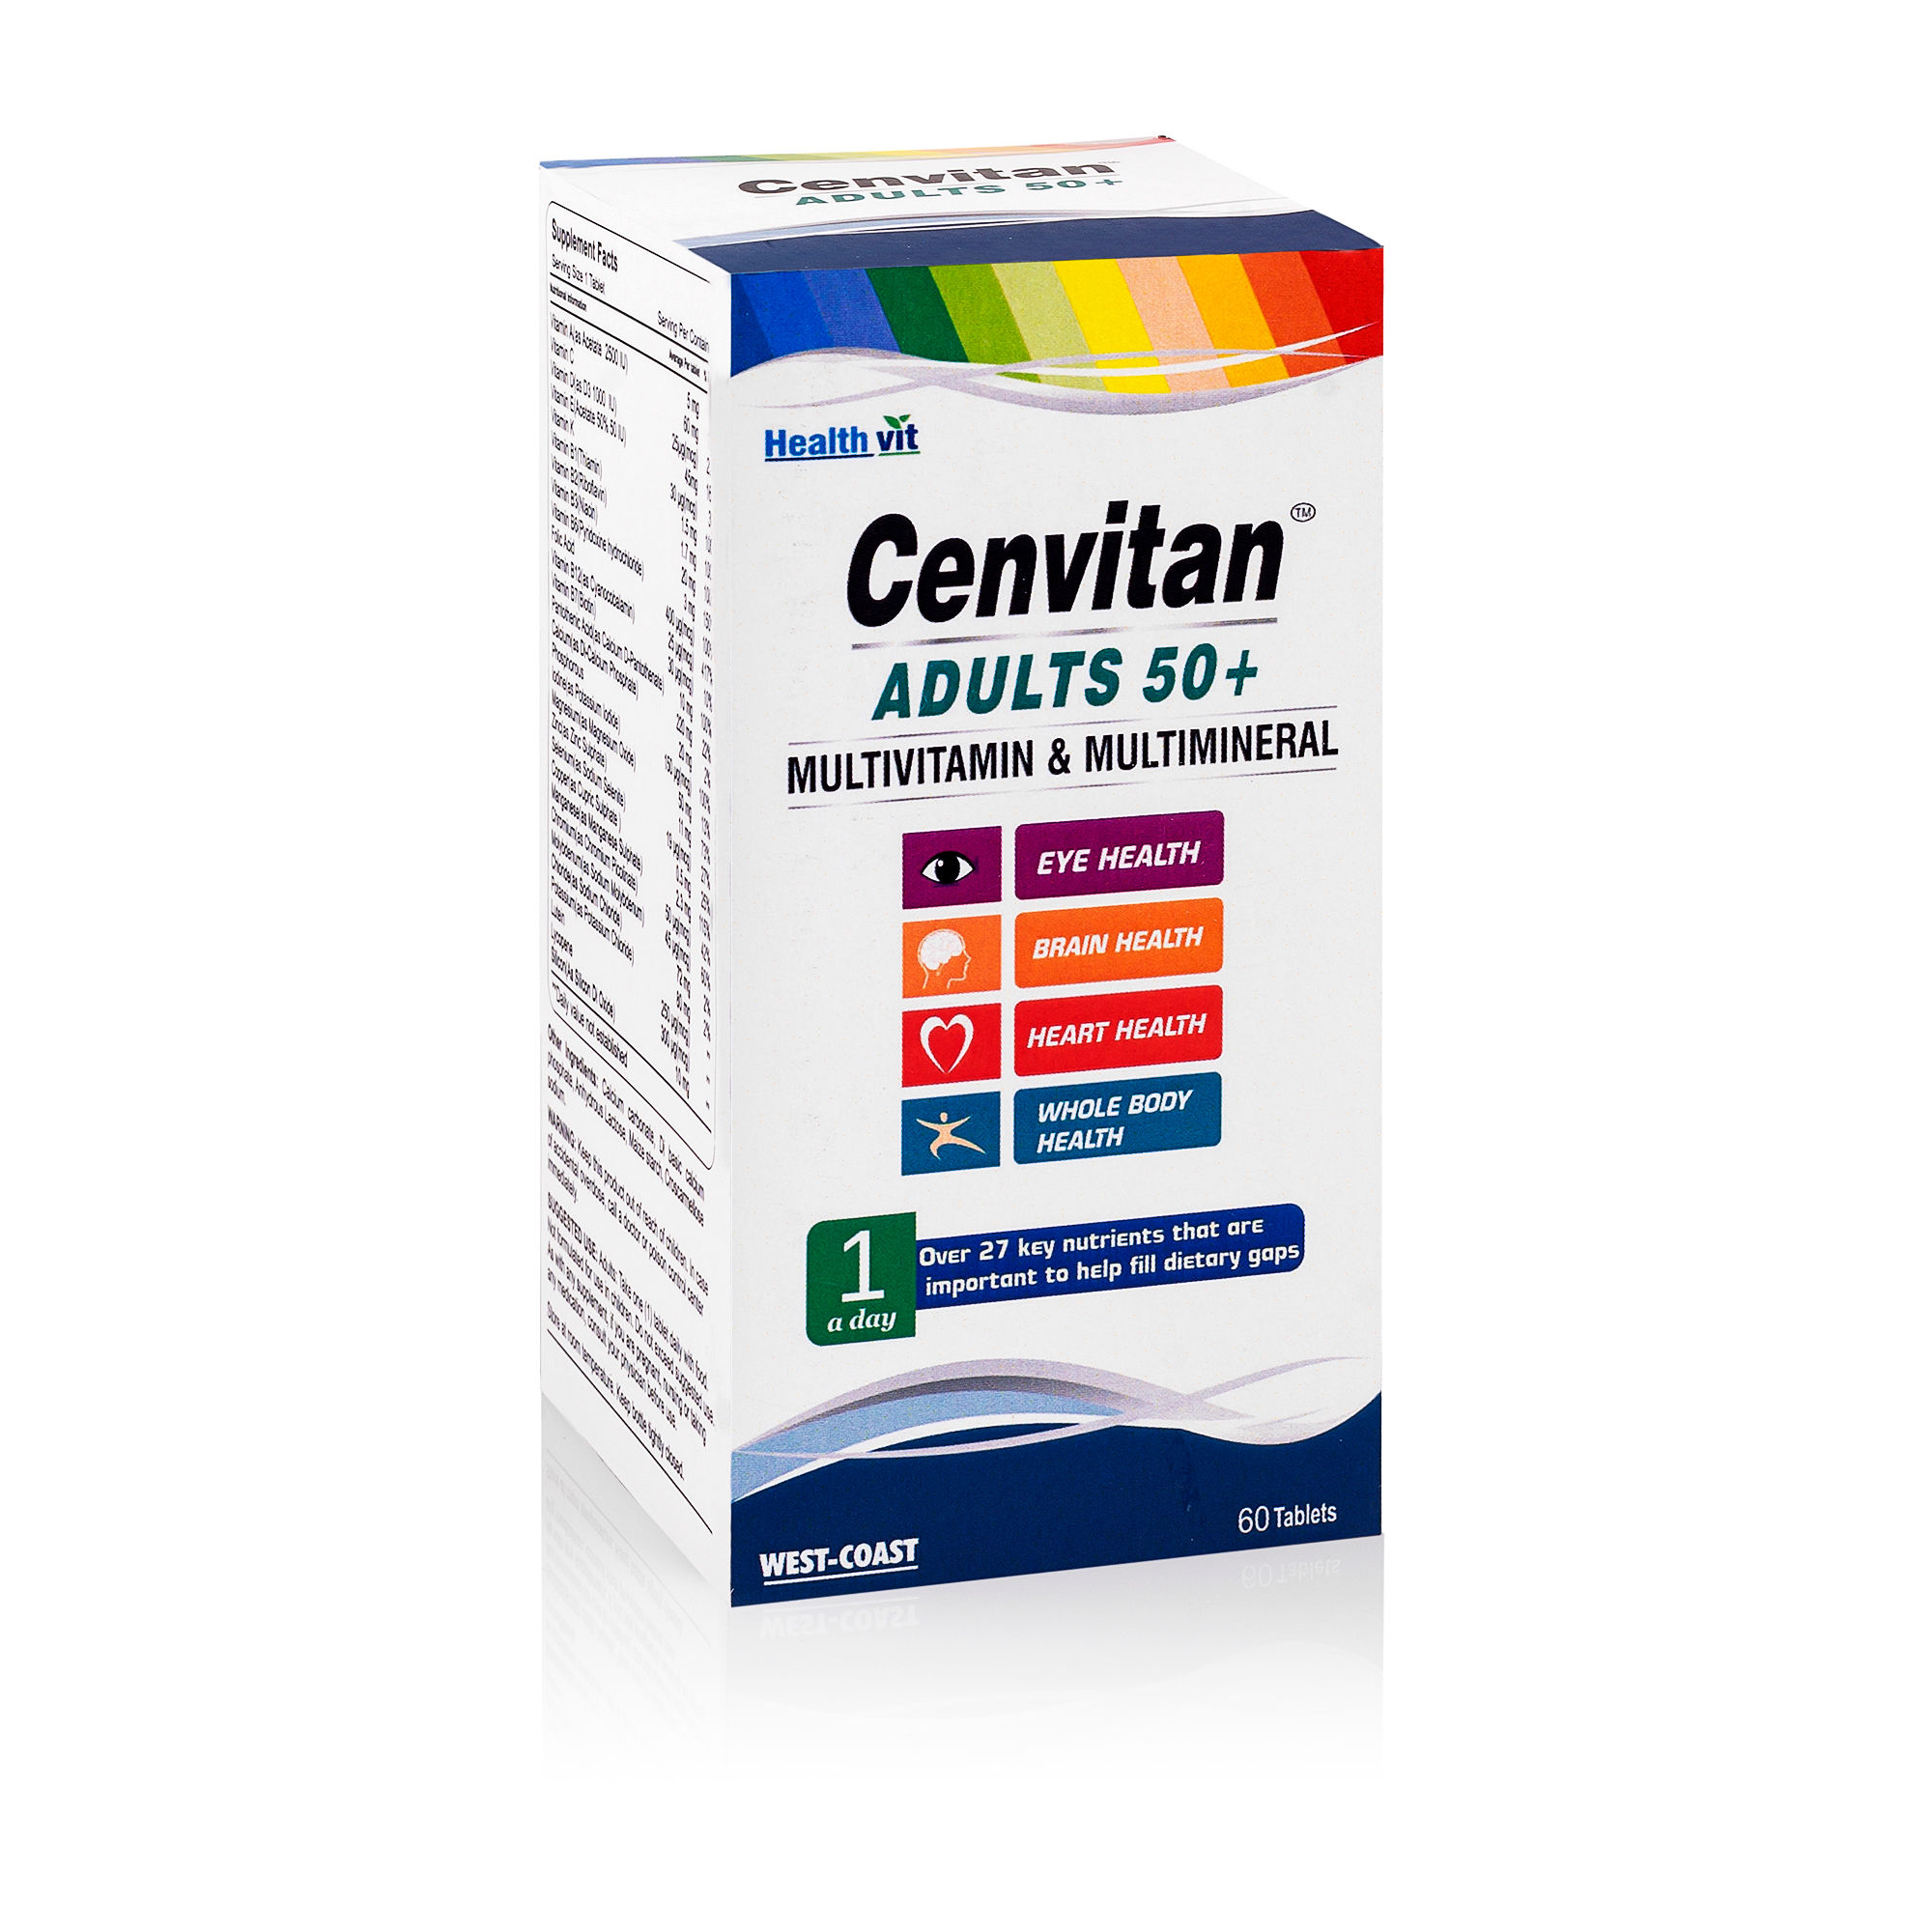 Healthvit Cenvitan Adults 50+ (Multivitamin & Multimineral) 60 Tablets